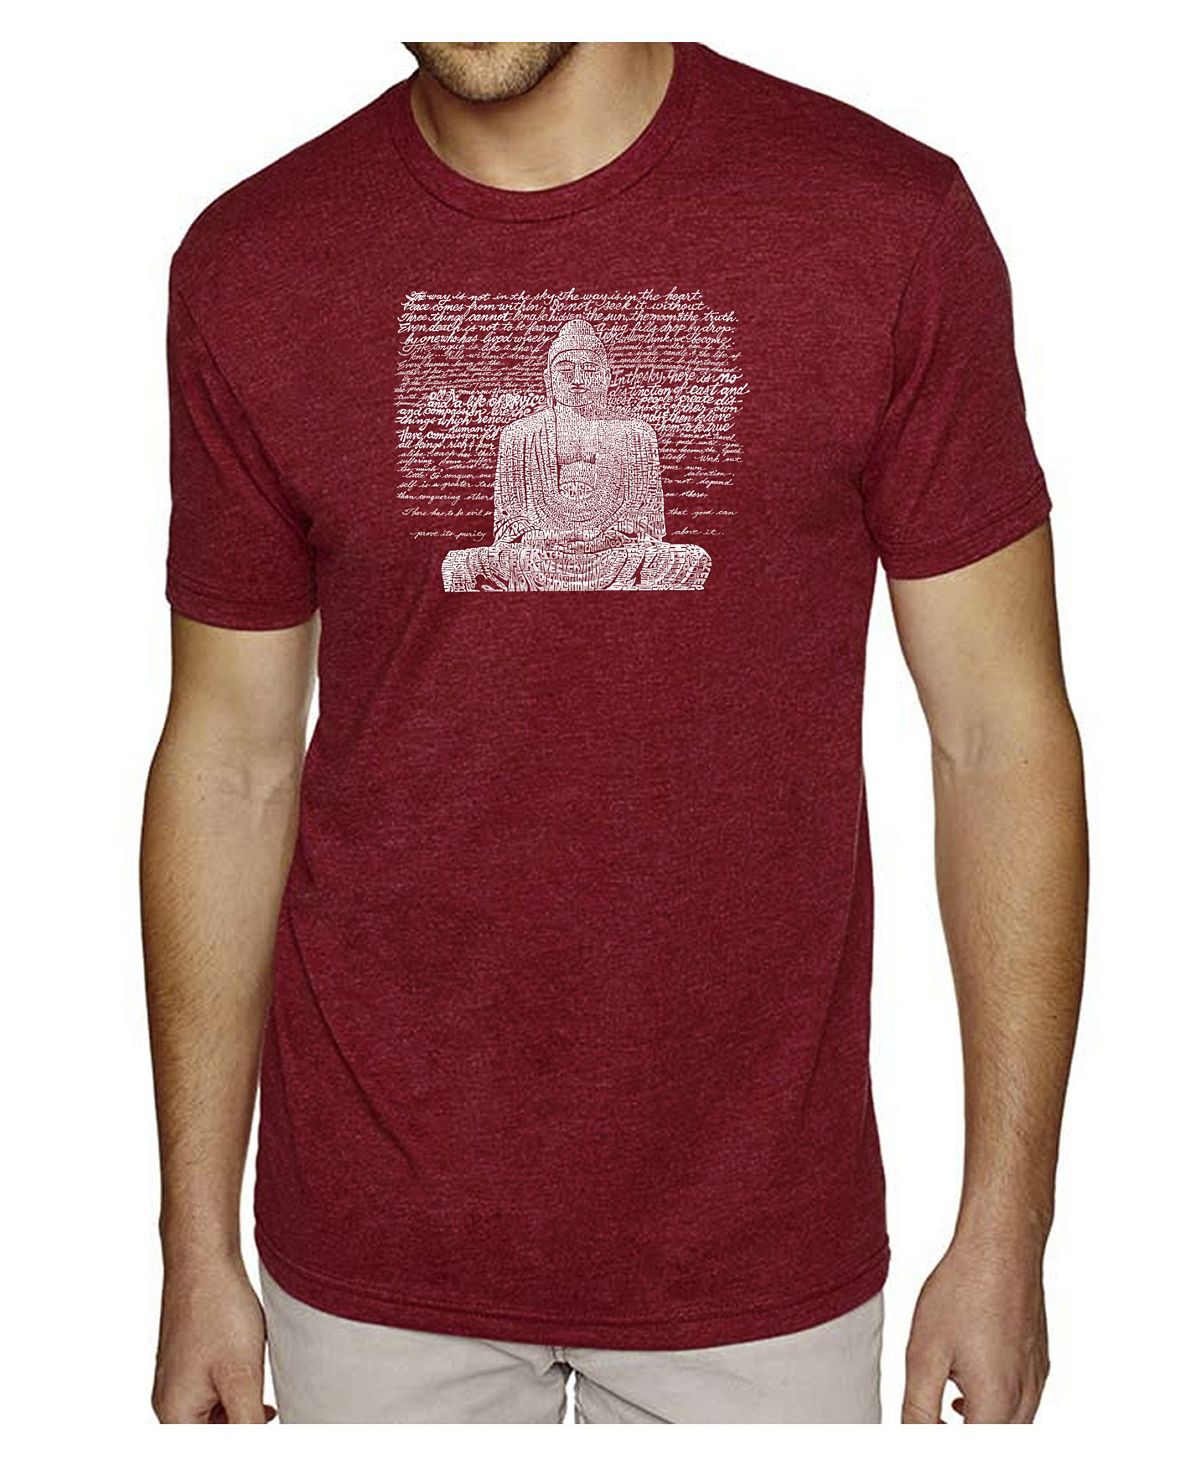 Мужская футболка премиум-класса с надписью word art - будда дзен LA Pop Art